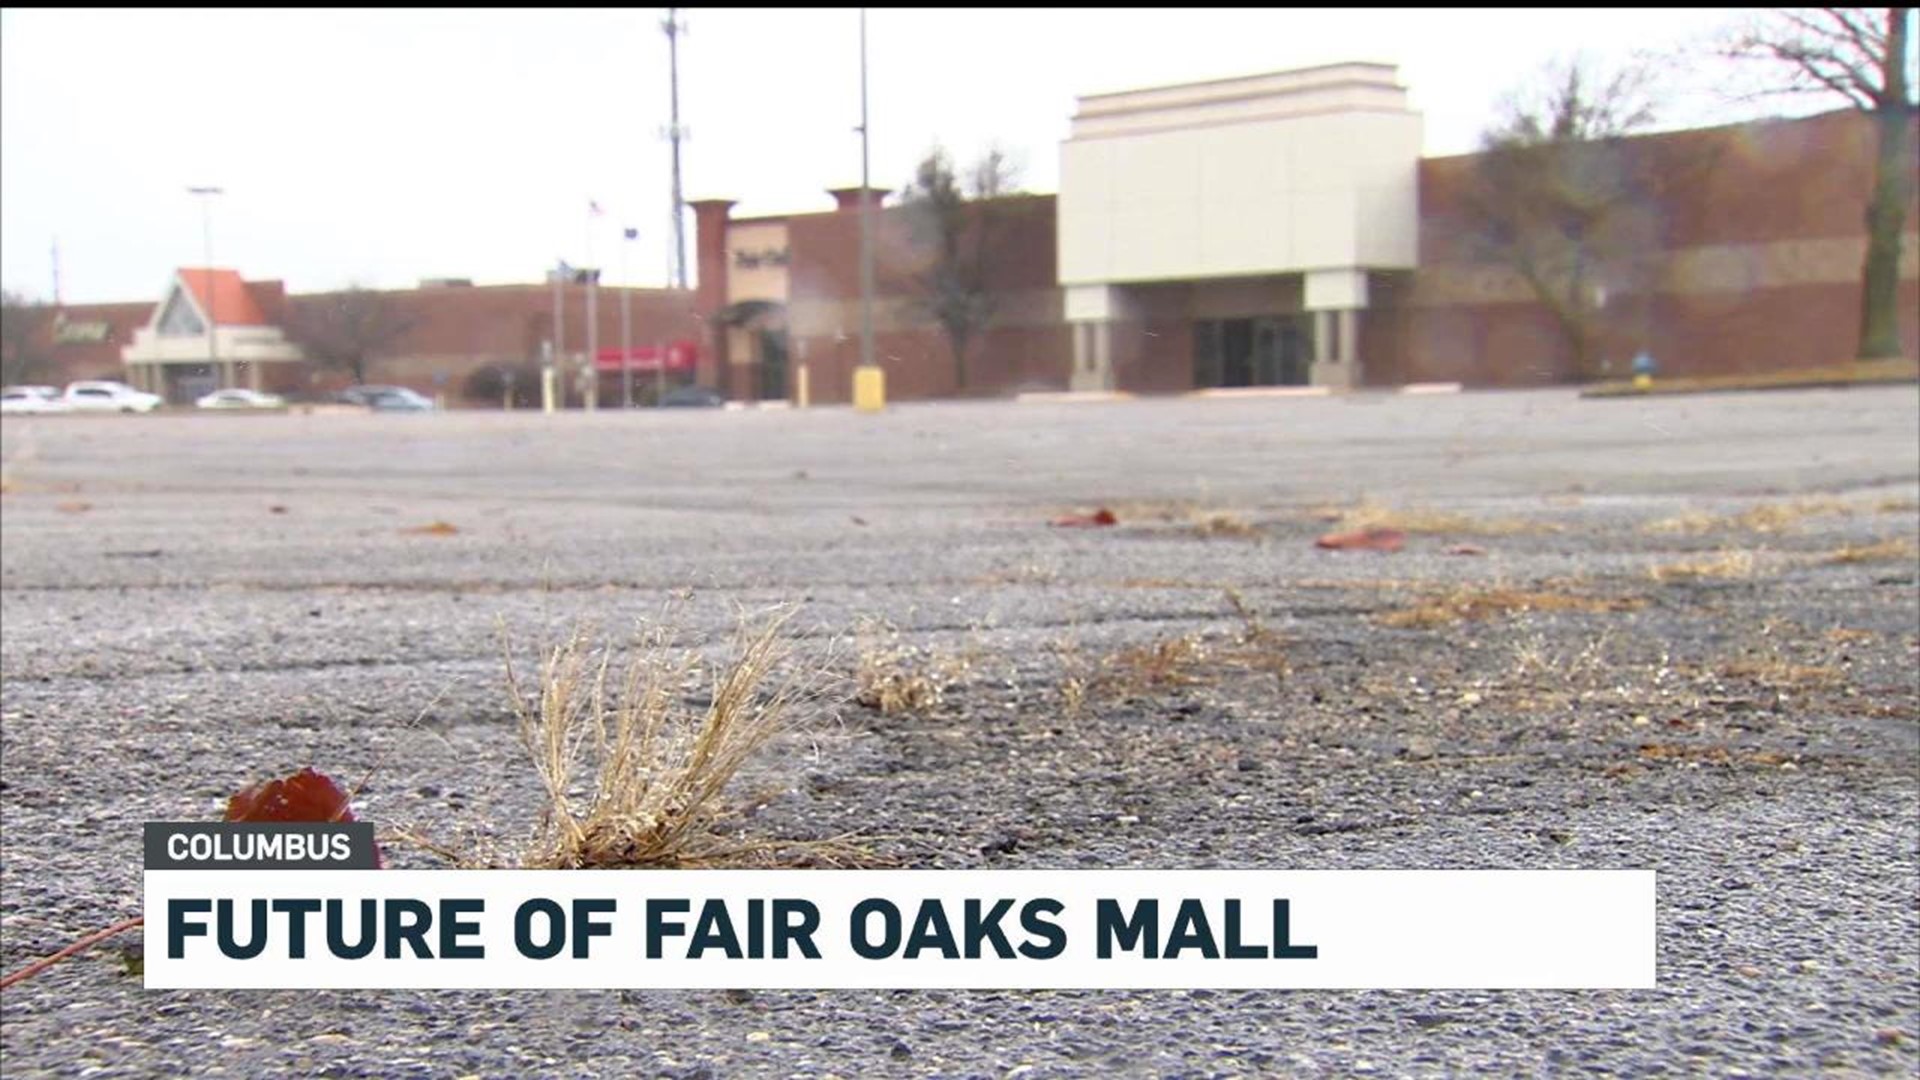 The Future of Fair Oaks Mall